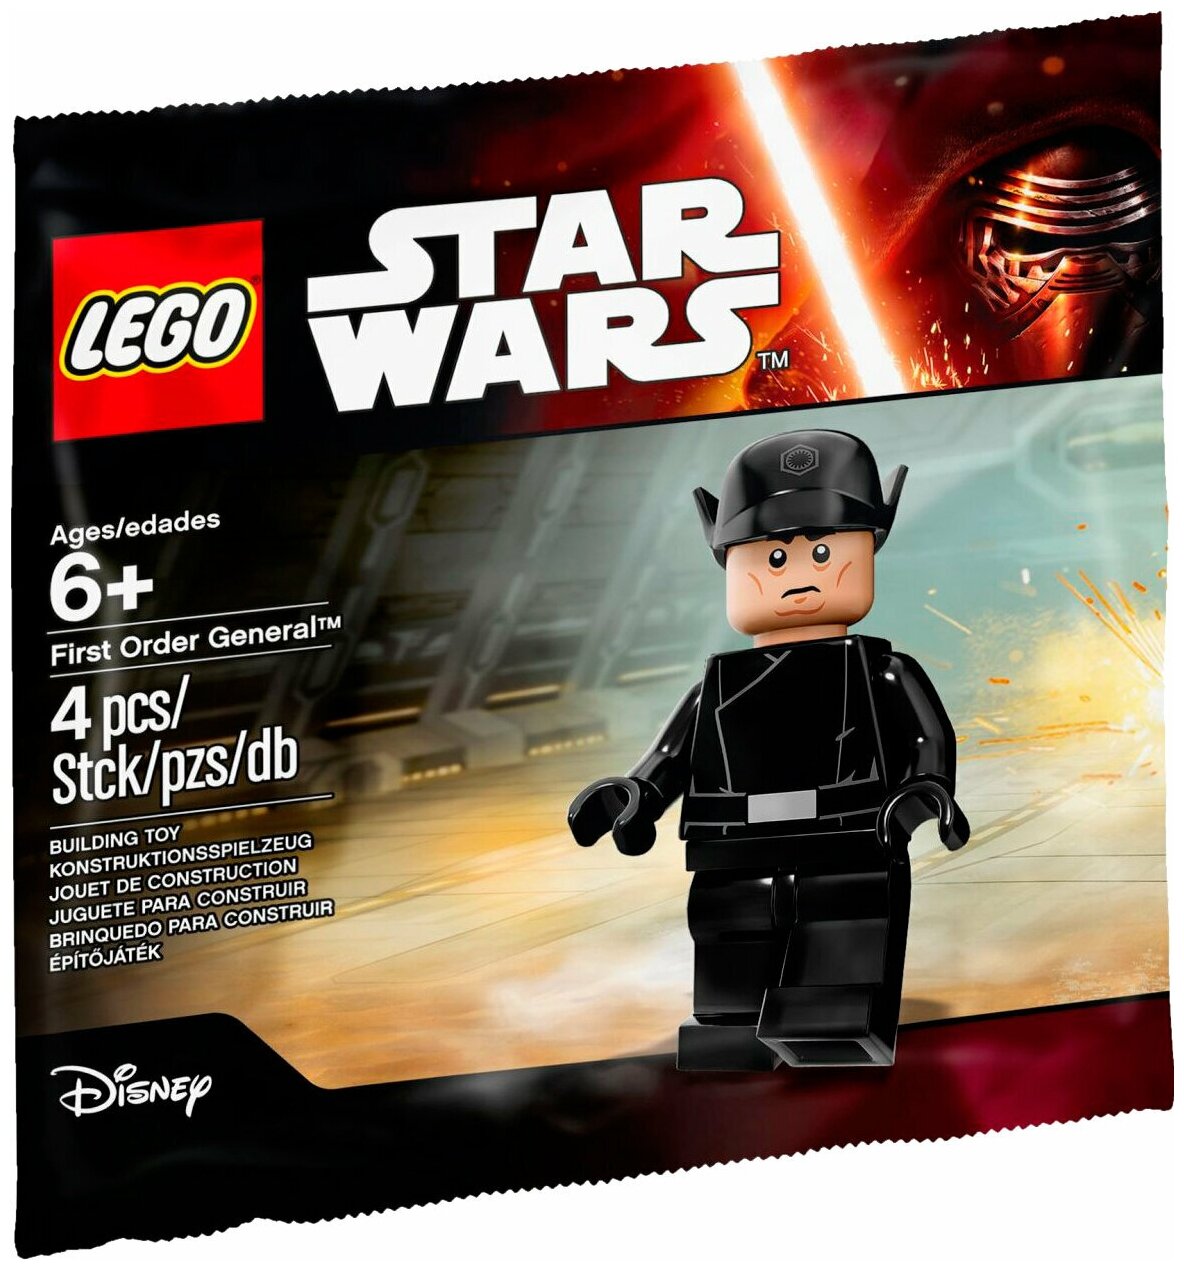 LEGO Star Wars 5004406 Генерал Первого Ордена